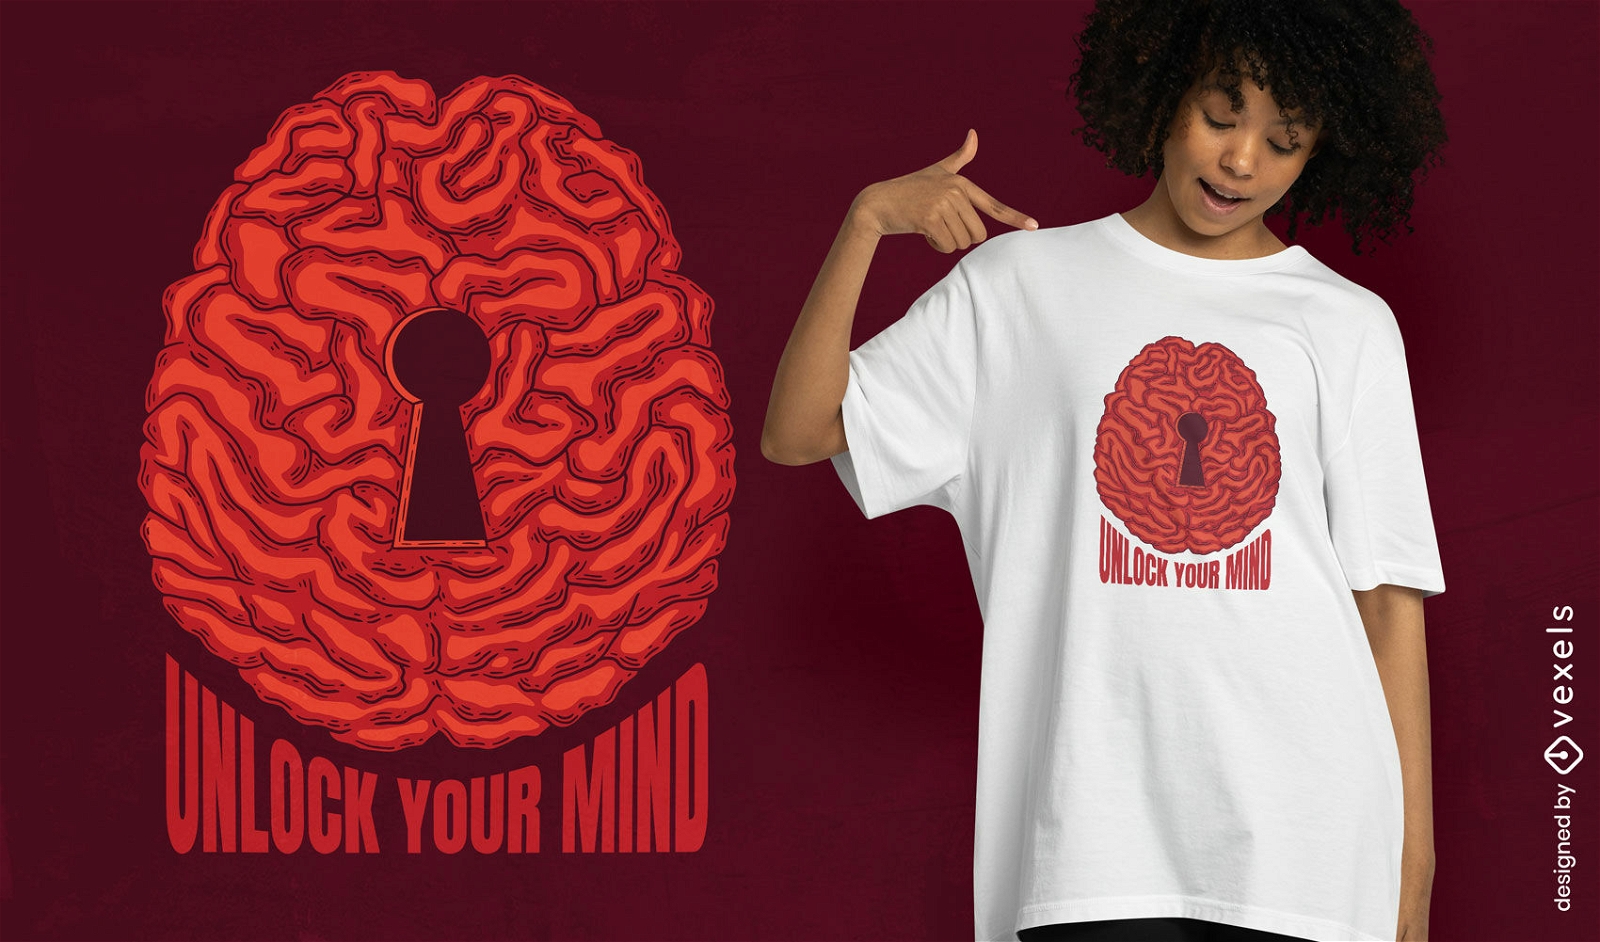 Desbloqueie seu design de camiseta mental